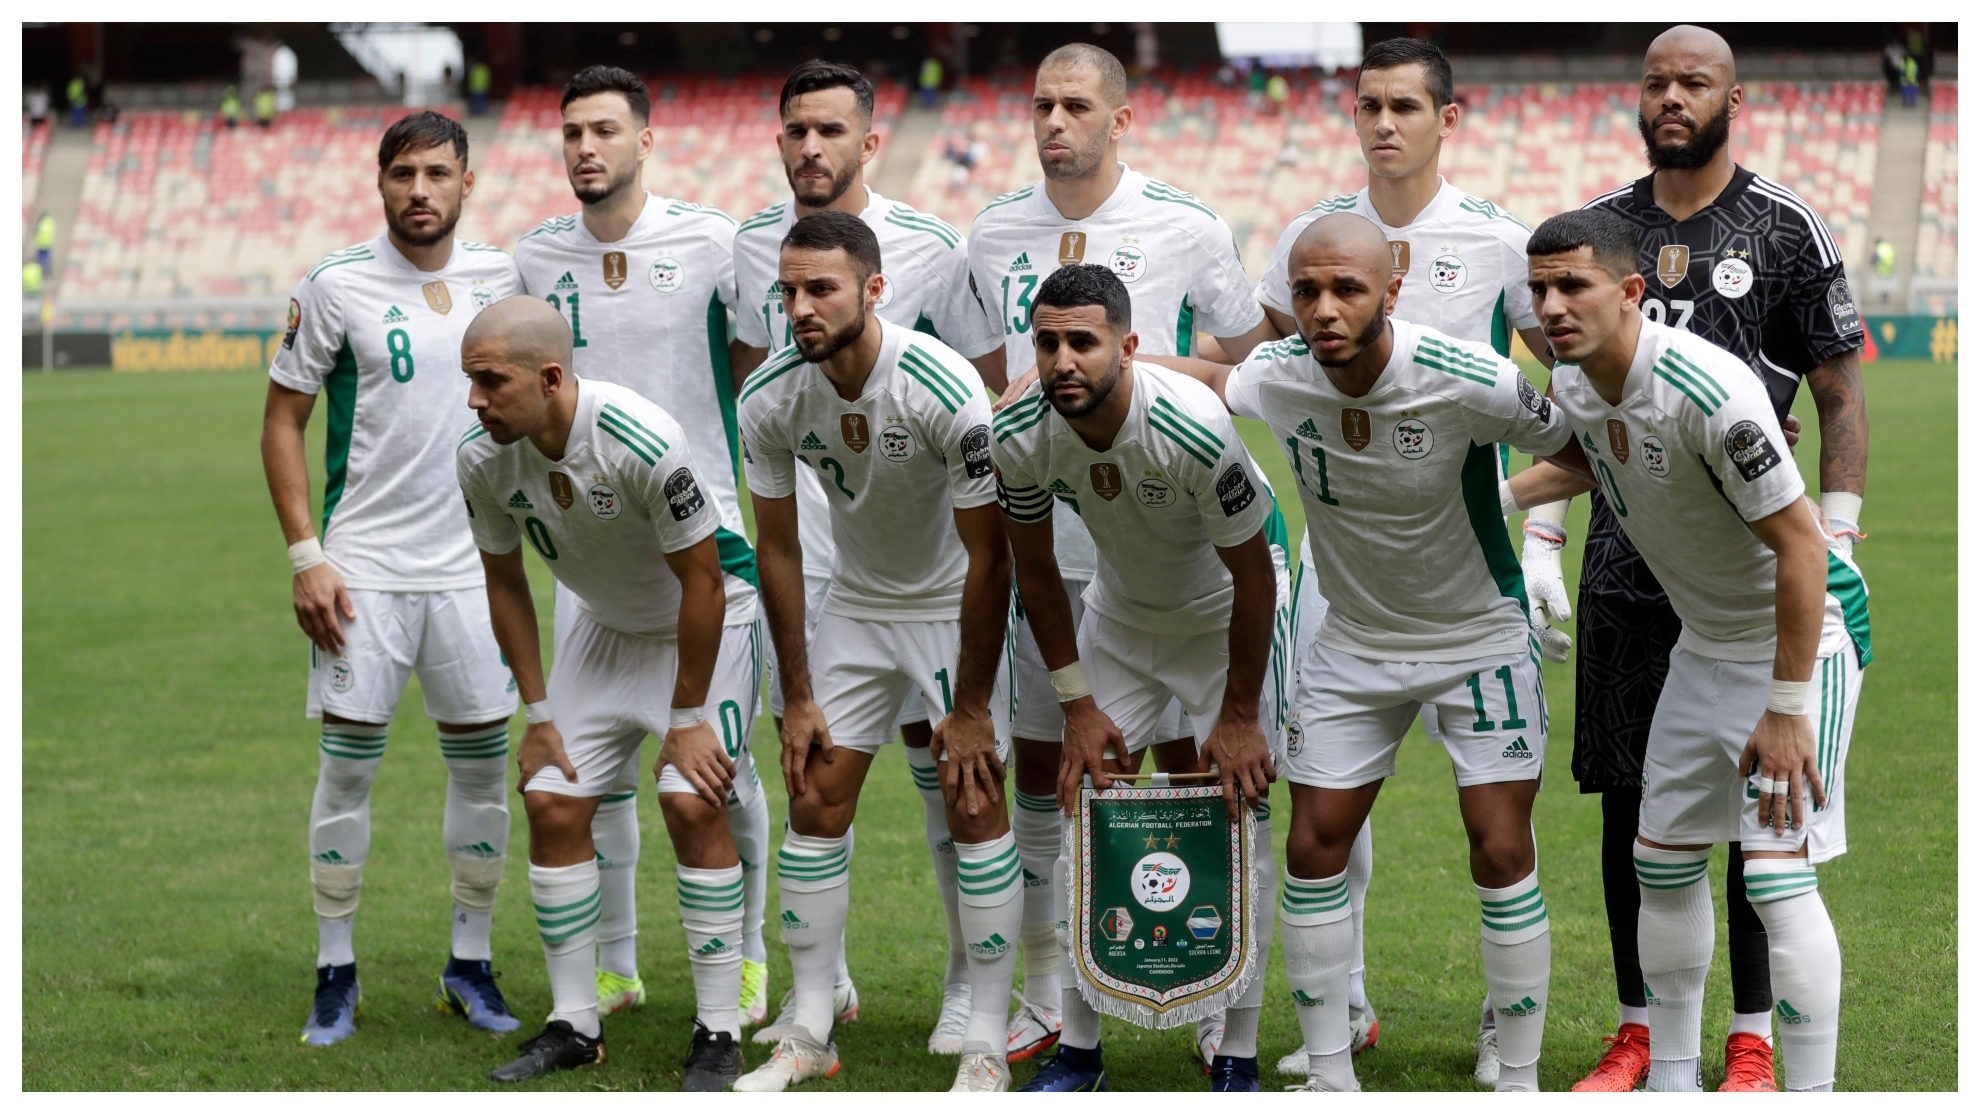 Selección de fútbol de argelia